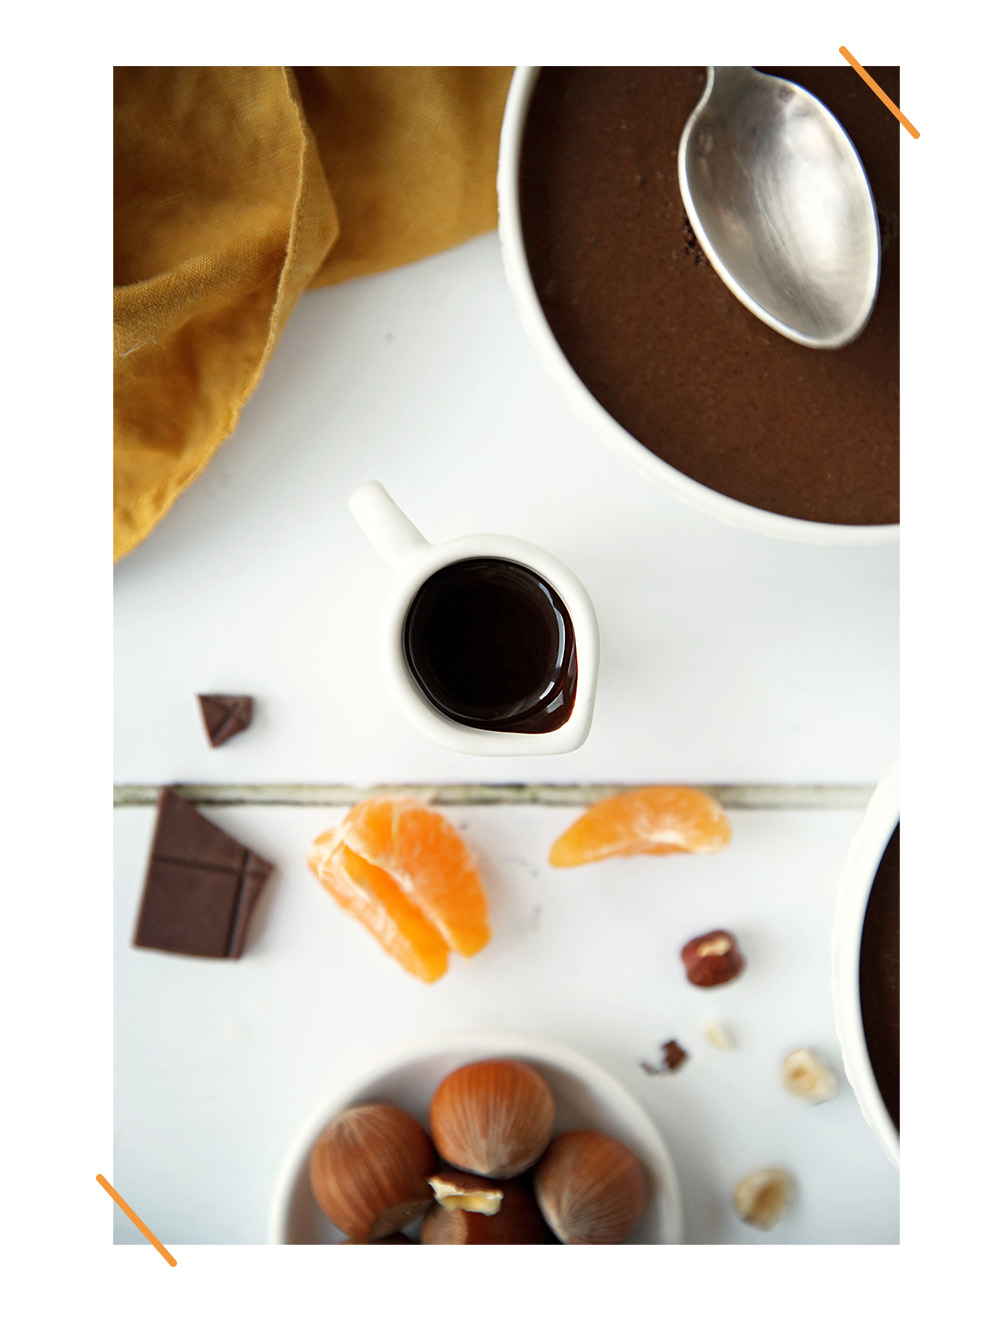 Mousse Au Chocolat Facile - Recette - Maïa Chä